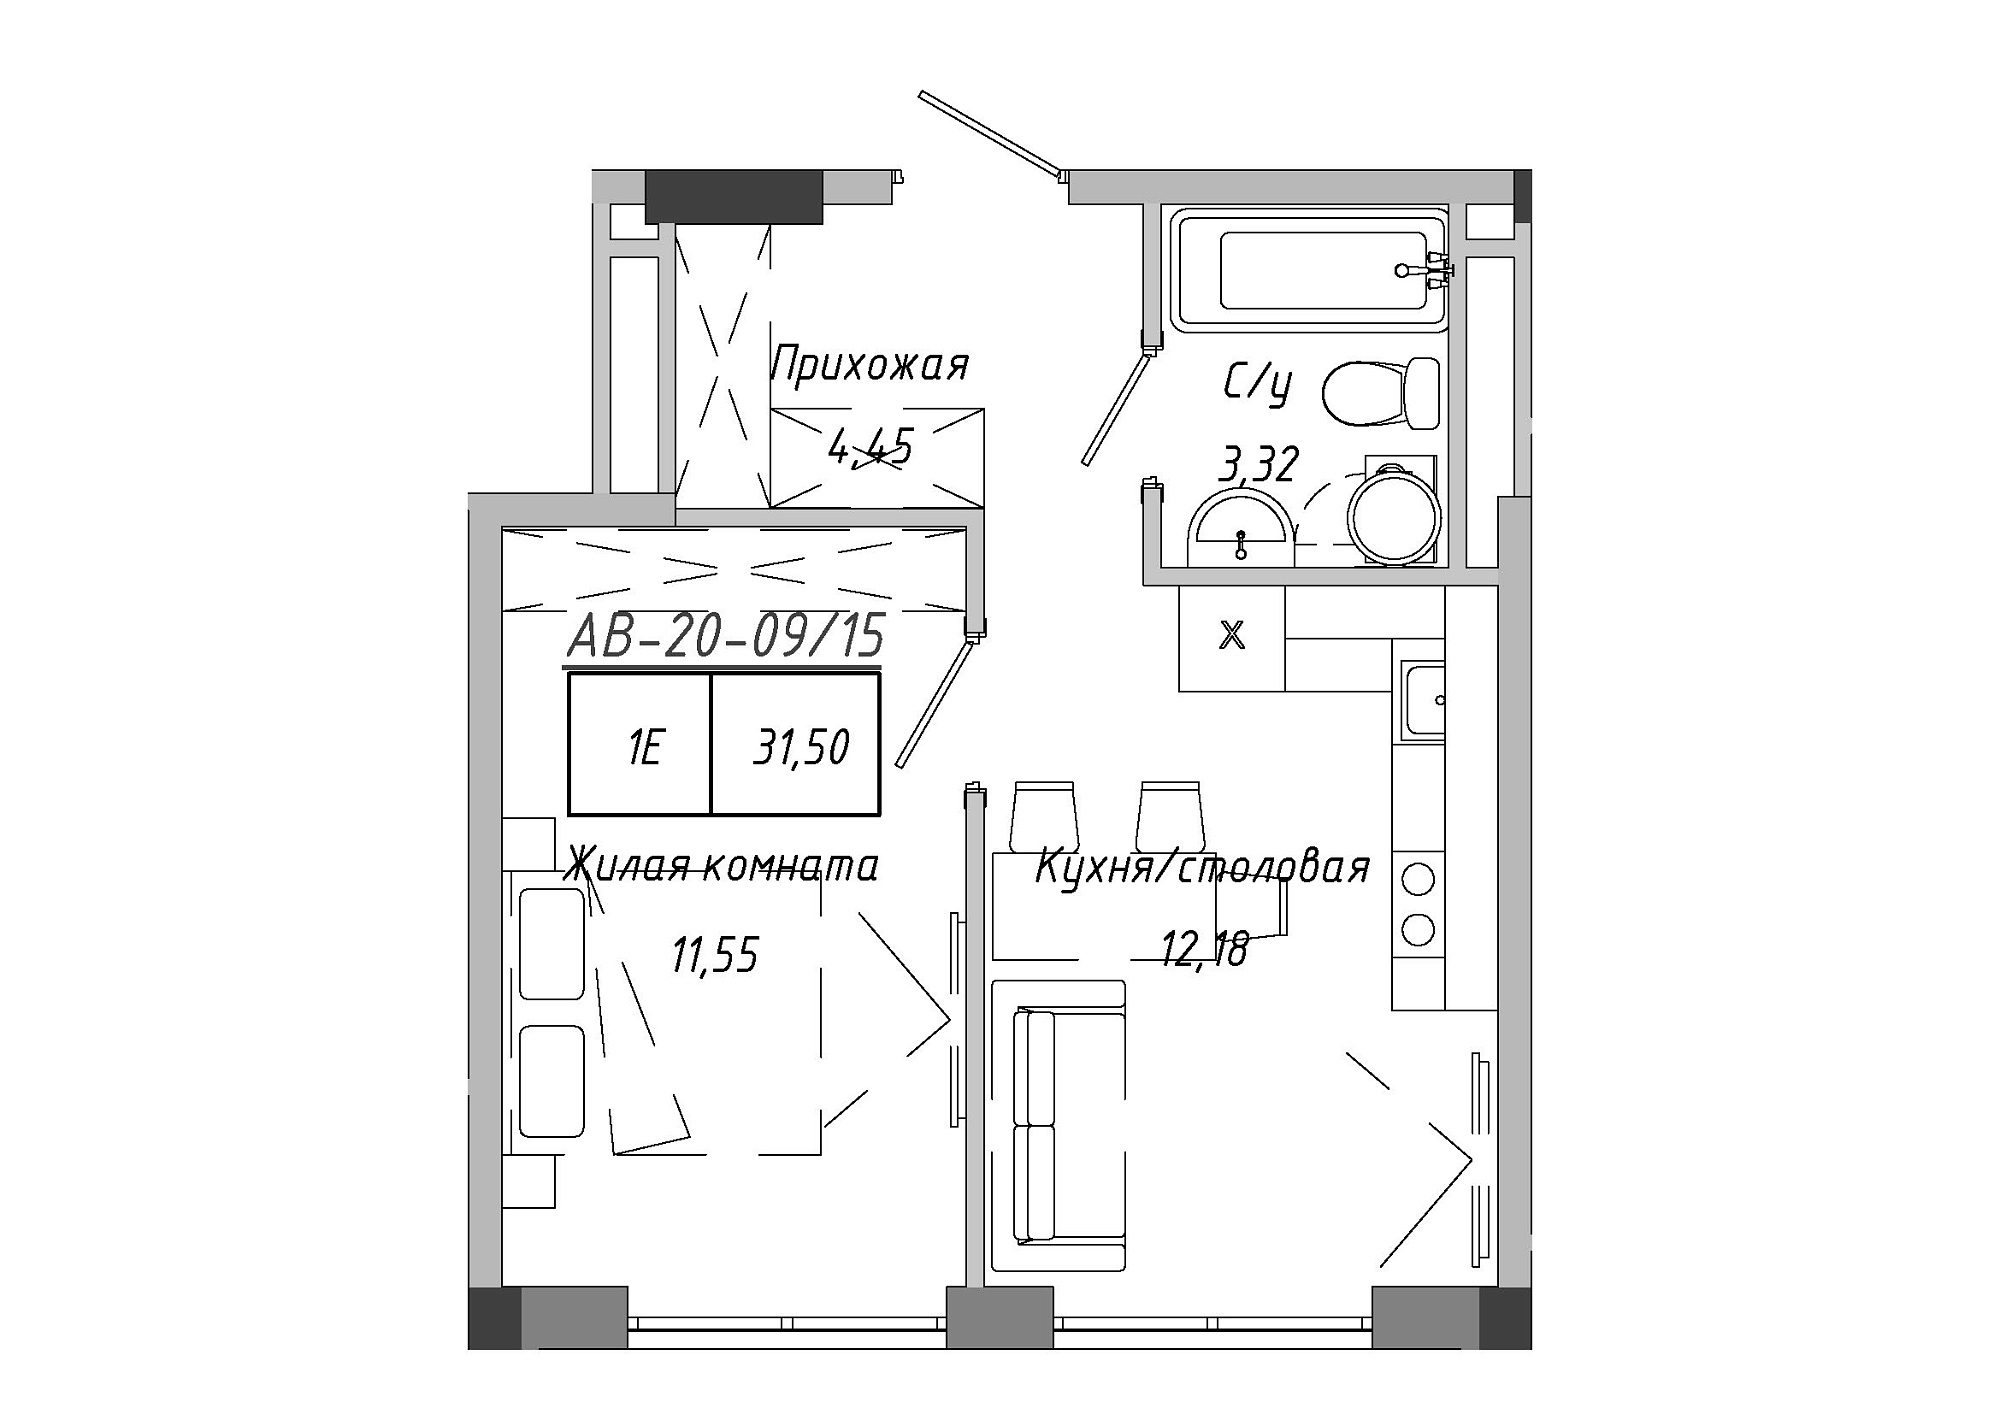 Планування 1-к квартира площею 31.51м2, AB-20-09/00015.